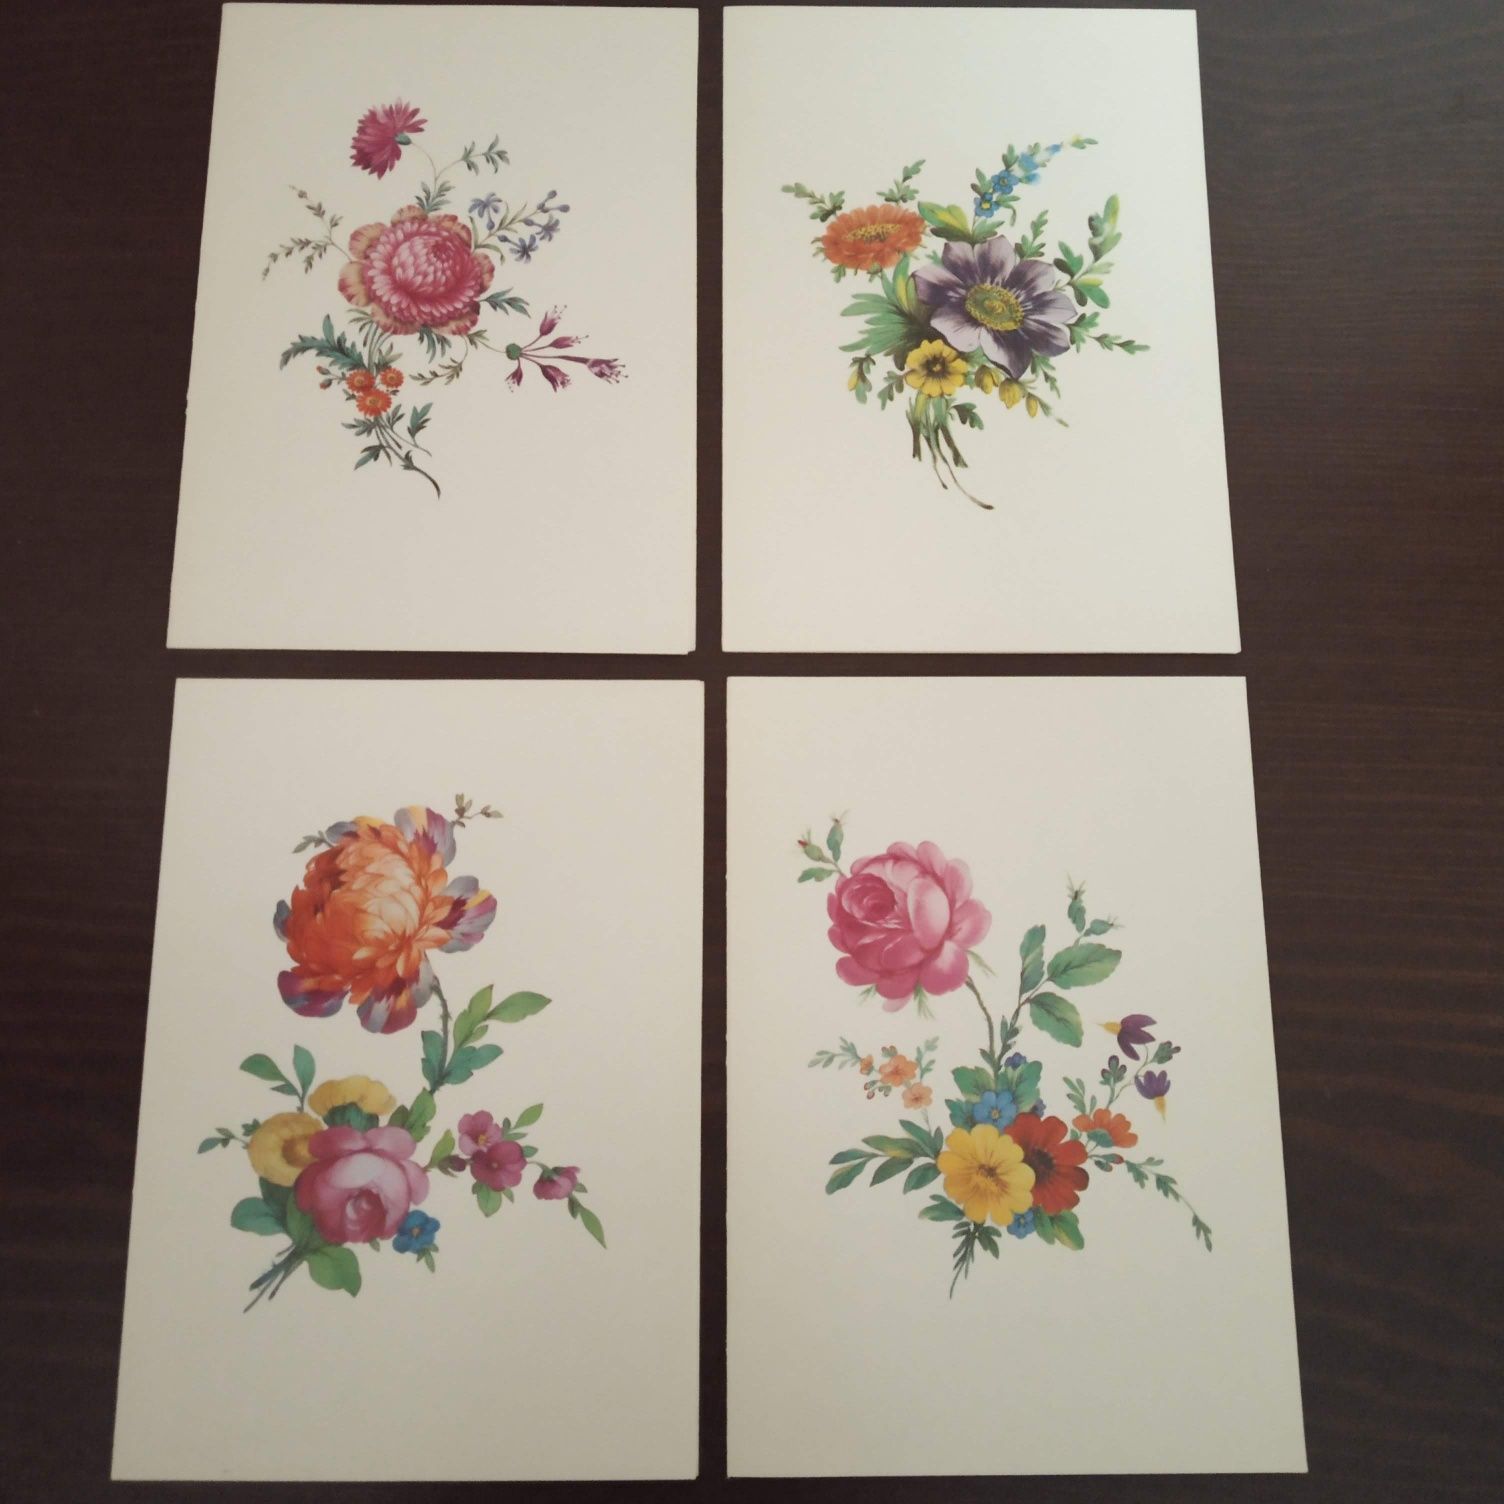 Karnety ze wzorami kwiatowymi malowane na porcelanie.